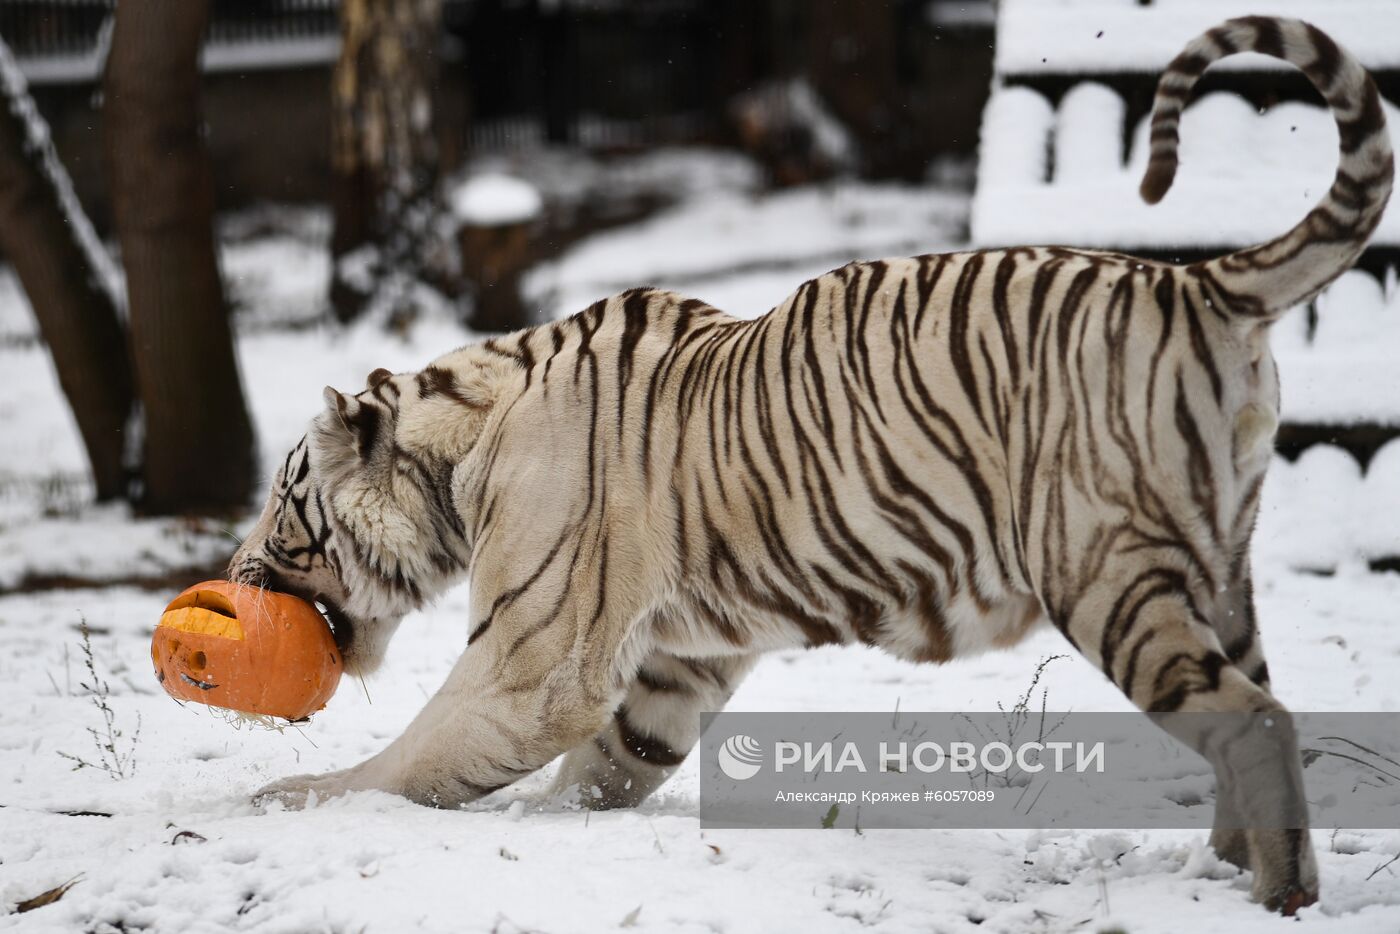 "День тыквы" в Новосибирском зоопарке